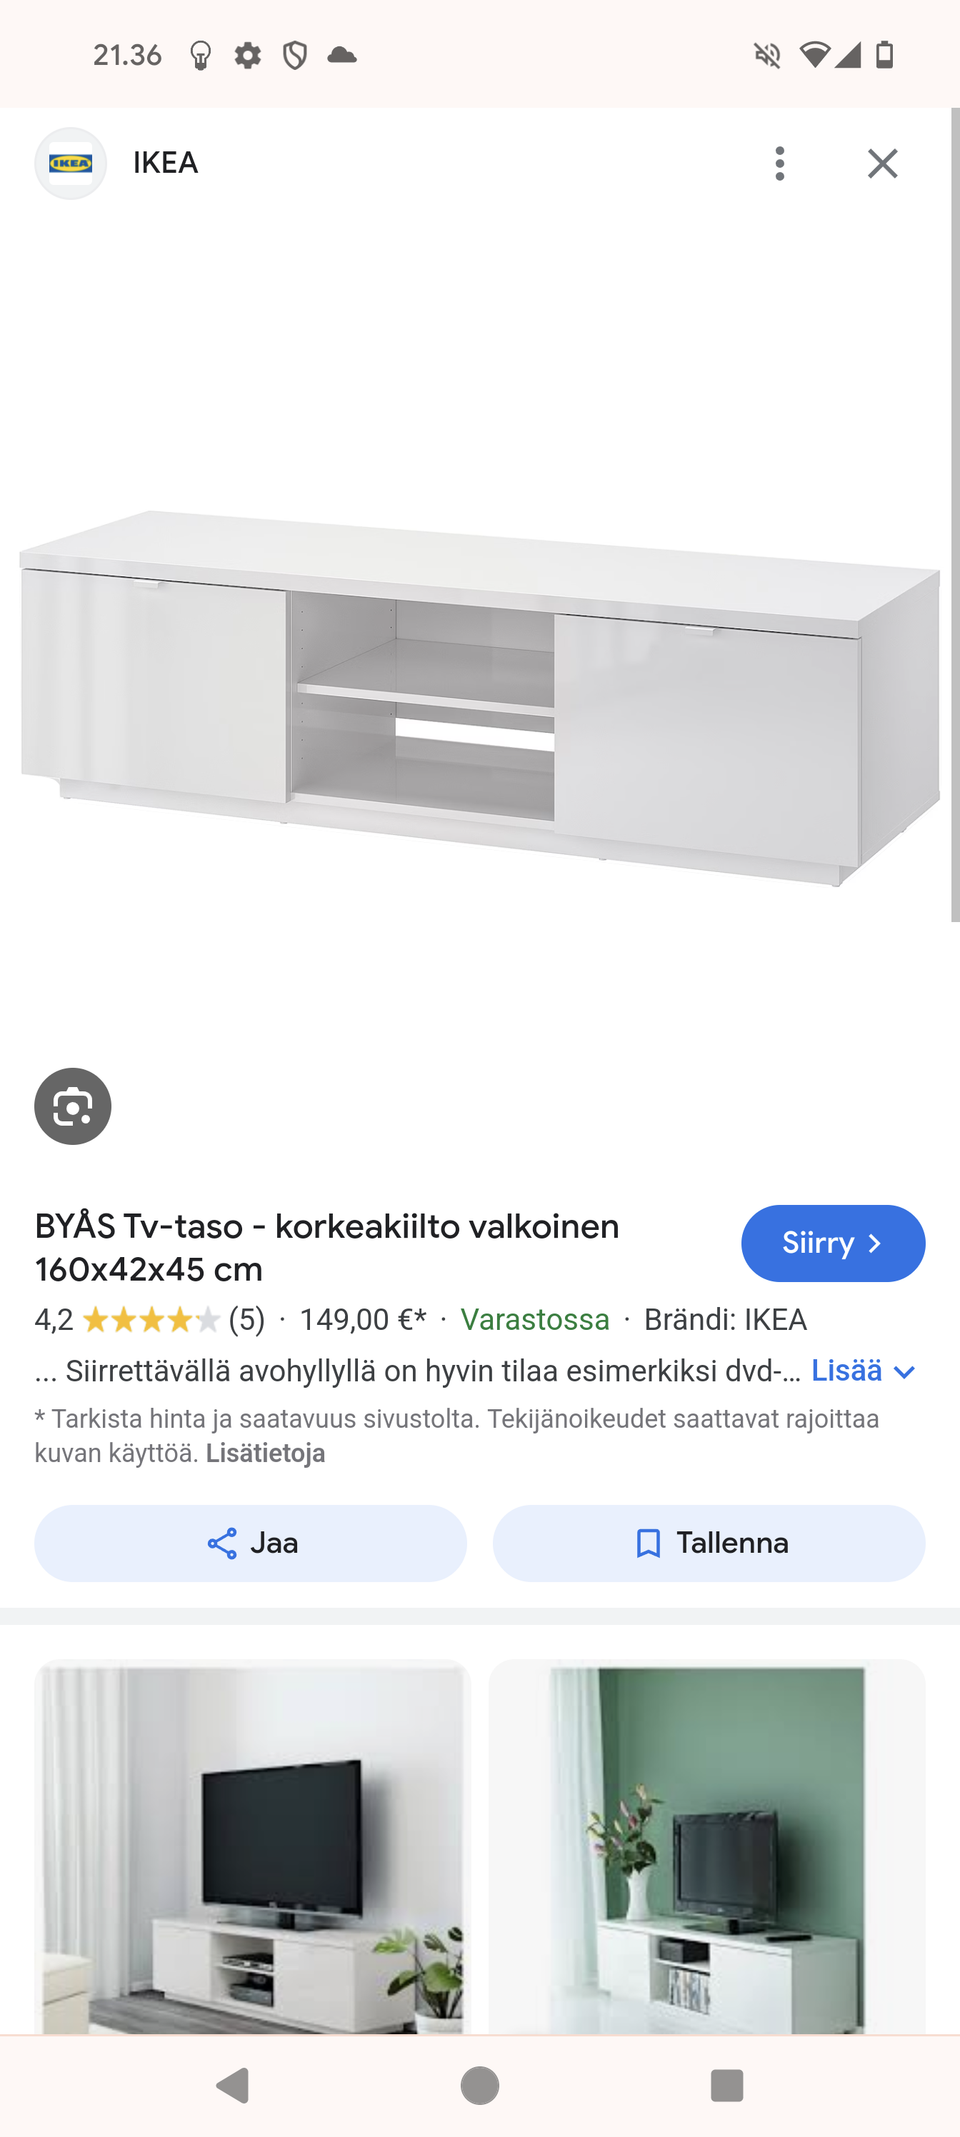 Valkoinen tv-taso, Ikea Byås korkeakiilto